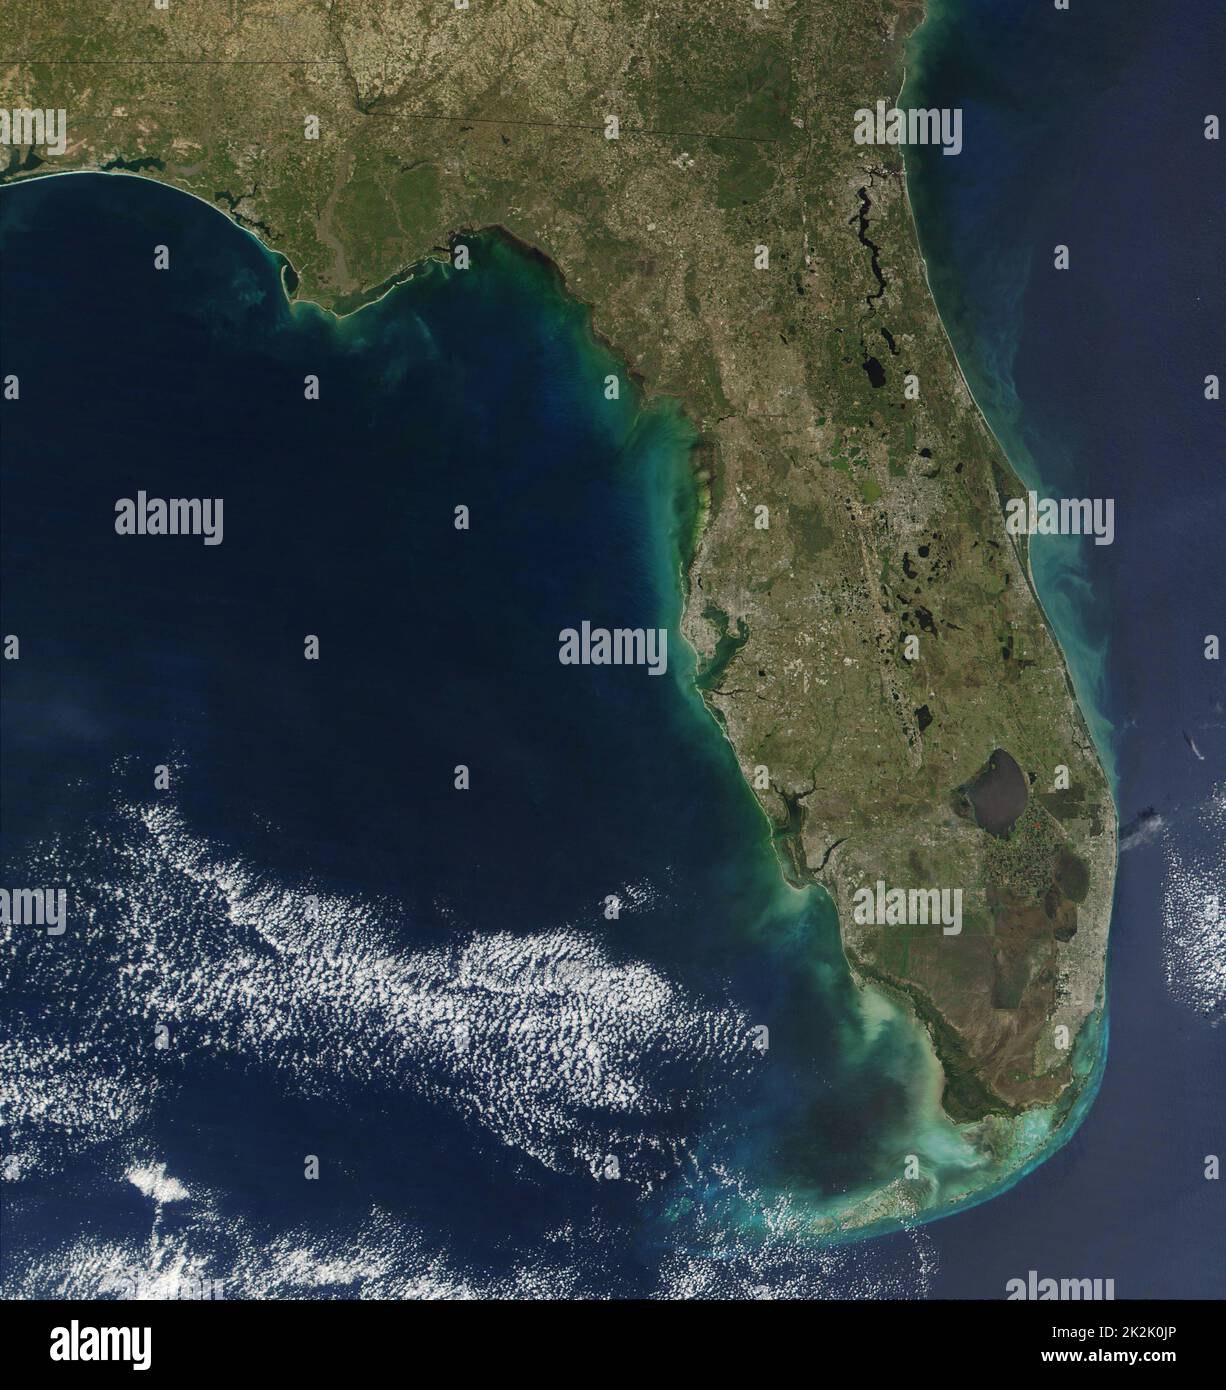 Sedimenti di fioritura algale la linea di costa della Florida del sud degli Stati Uniti d'America, dando la penisola un telaio di colore verdastro. Una fioritura algale è un rapido aumento o di accumulo in una popolazione di alghe in un sistema idrico. Foto Stock